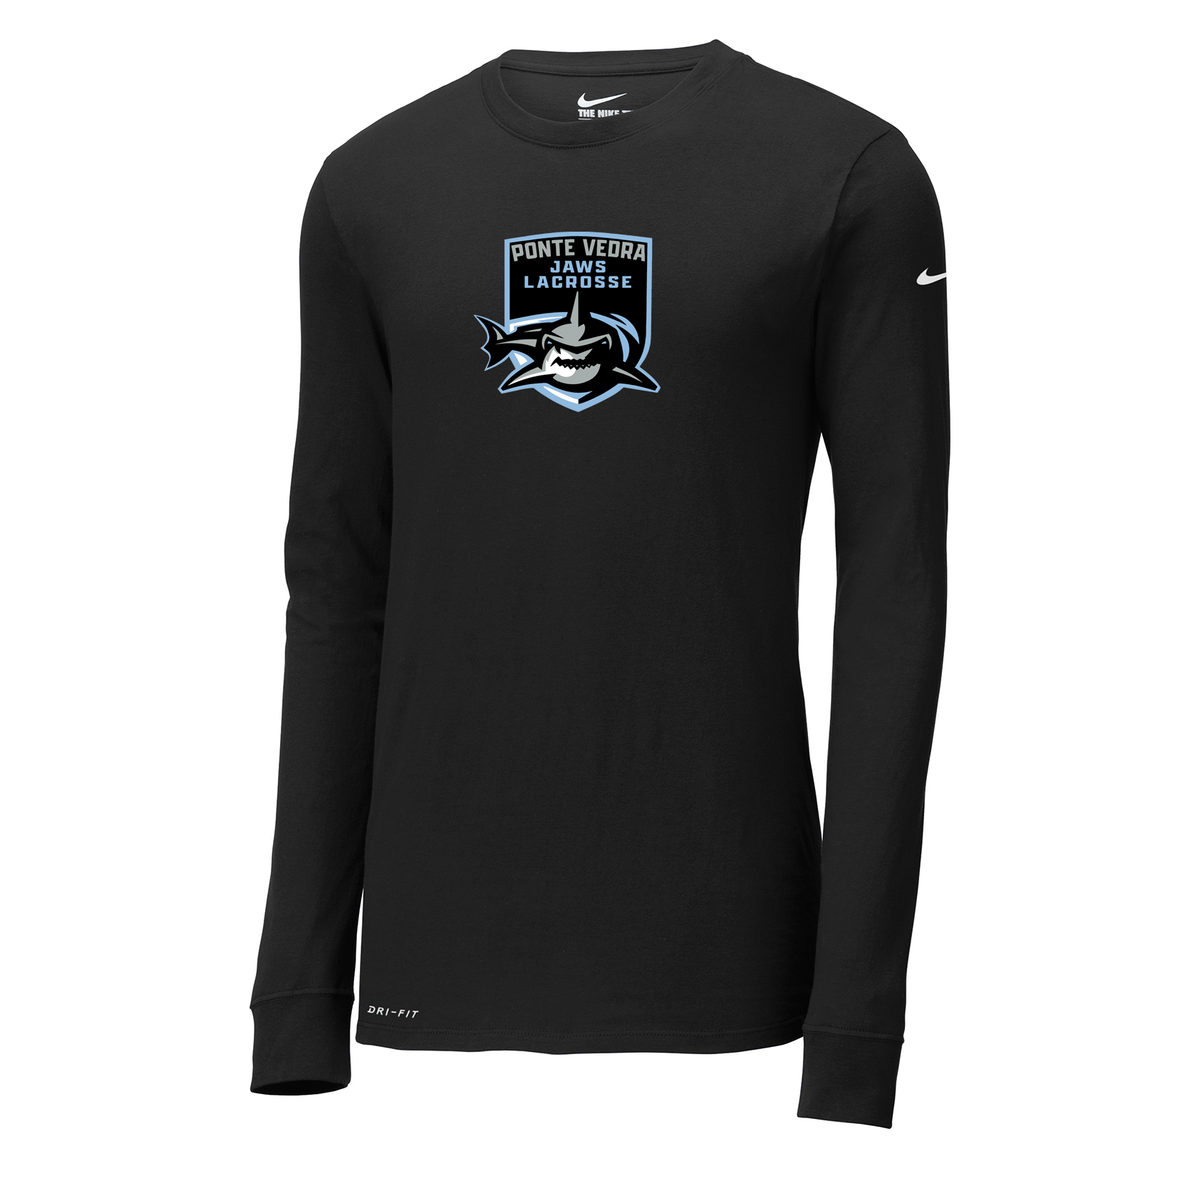 Ponte Vedra JAWS Lacrosse Nike Dri-FIT Long Sleeve Tee